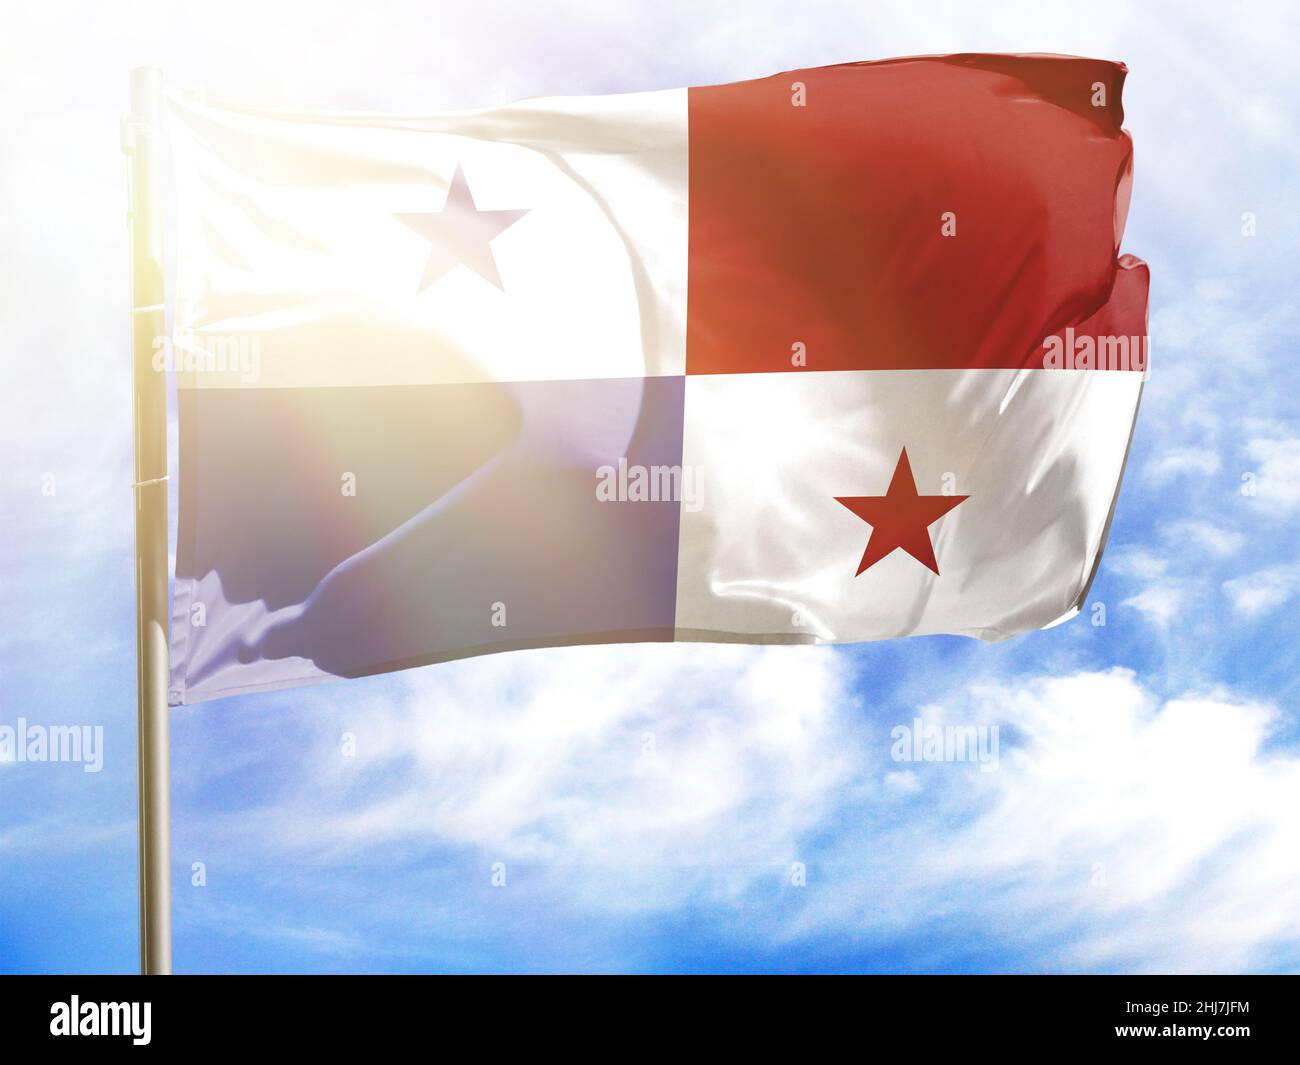 Flagpole with flag of Panama. Stock Photo